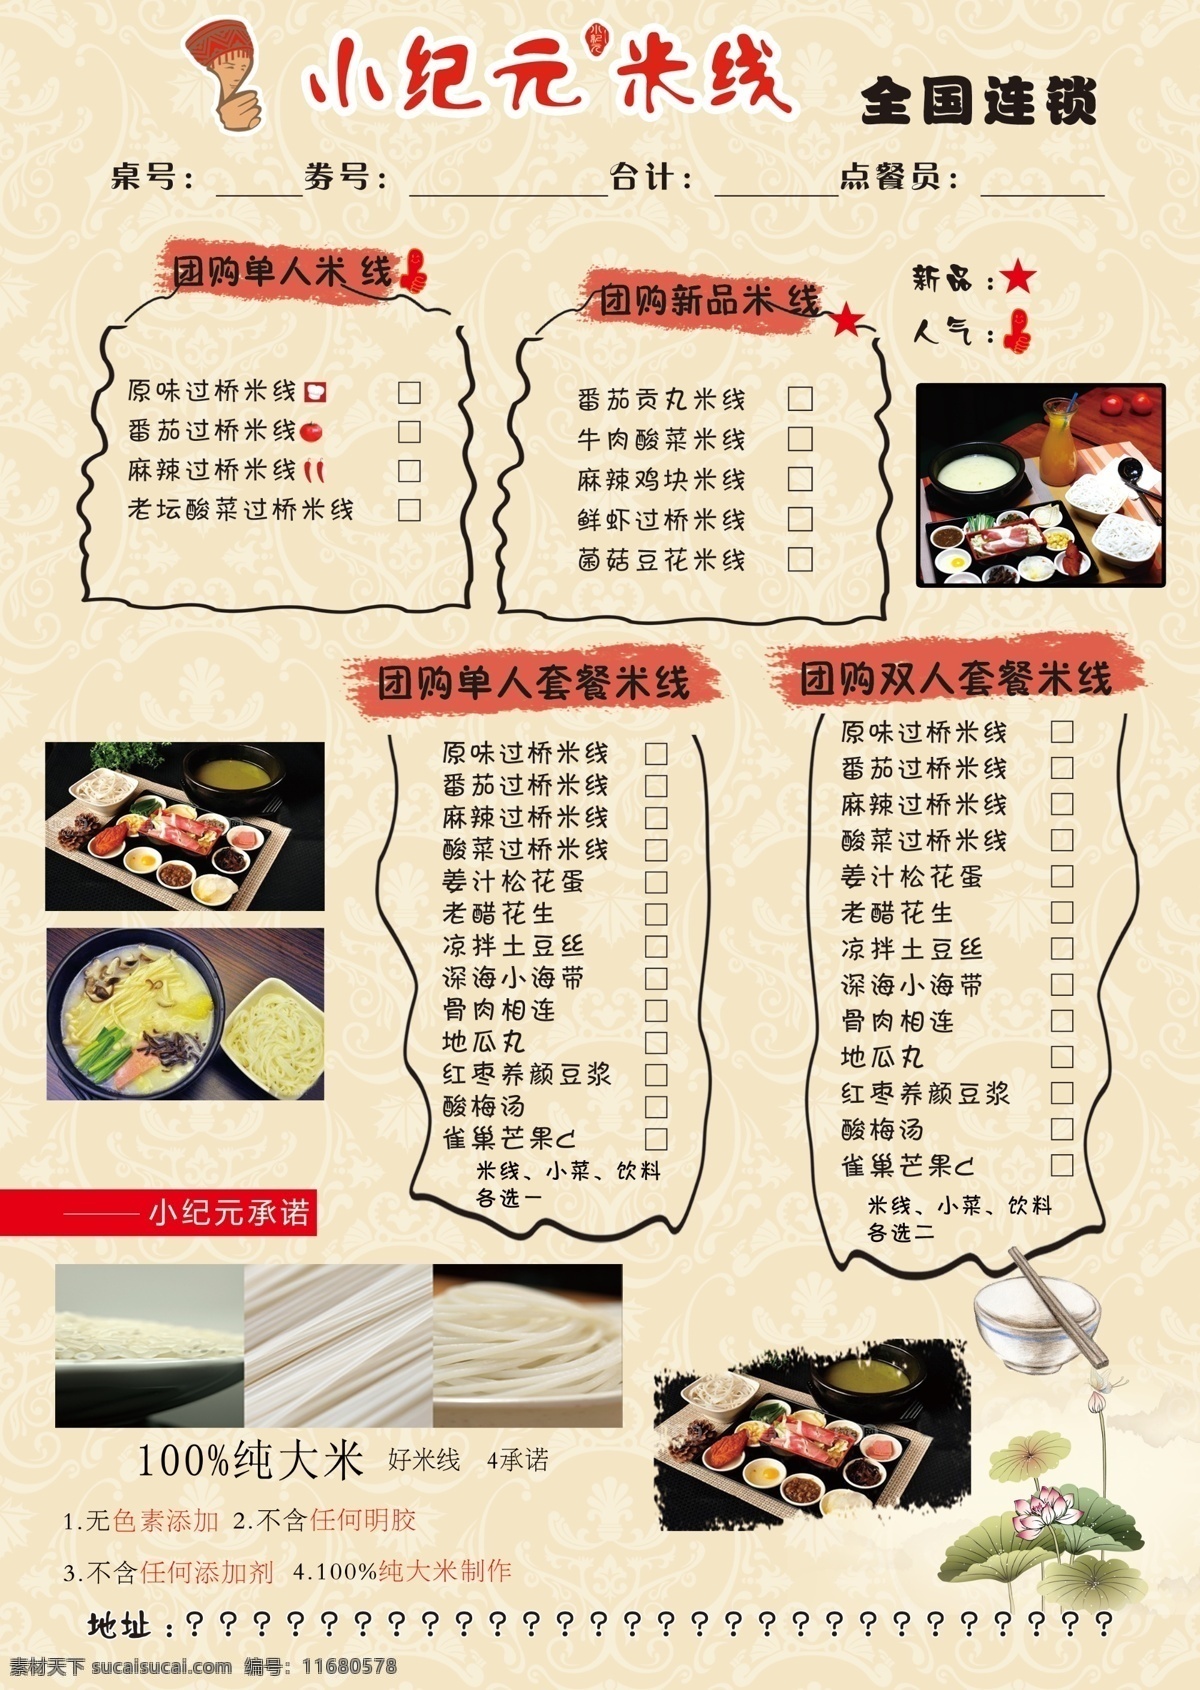 米线菜单 小纪元米线 小 纪元 logo 米线制作 米线原料 可选菜单 菜谱 菜单菜谱